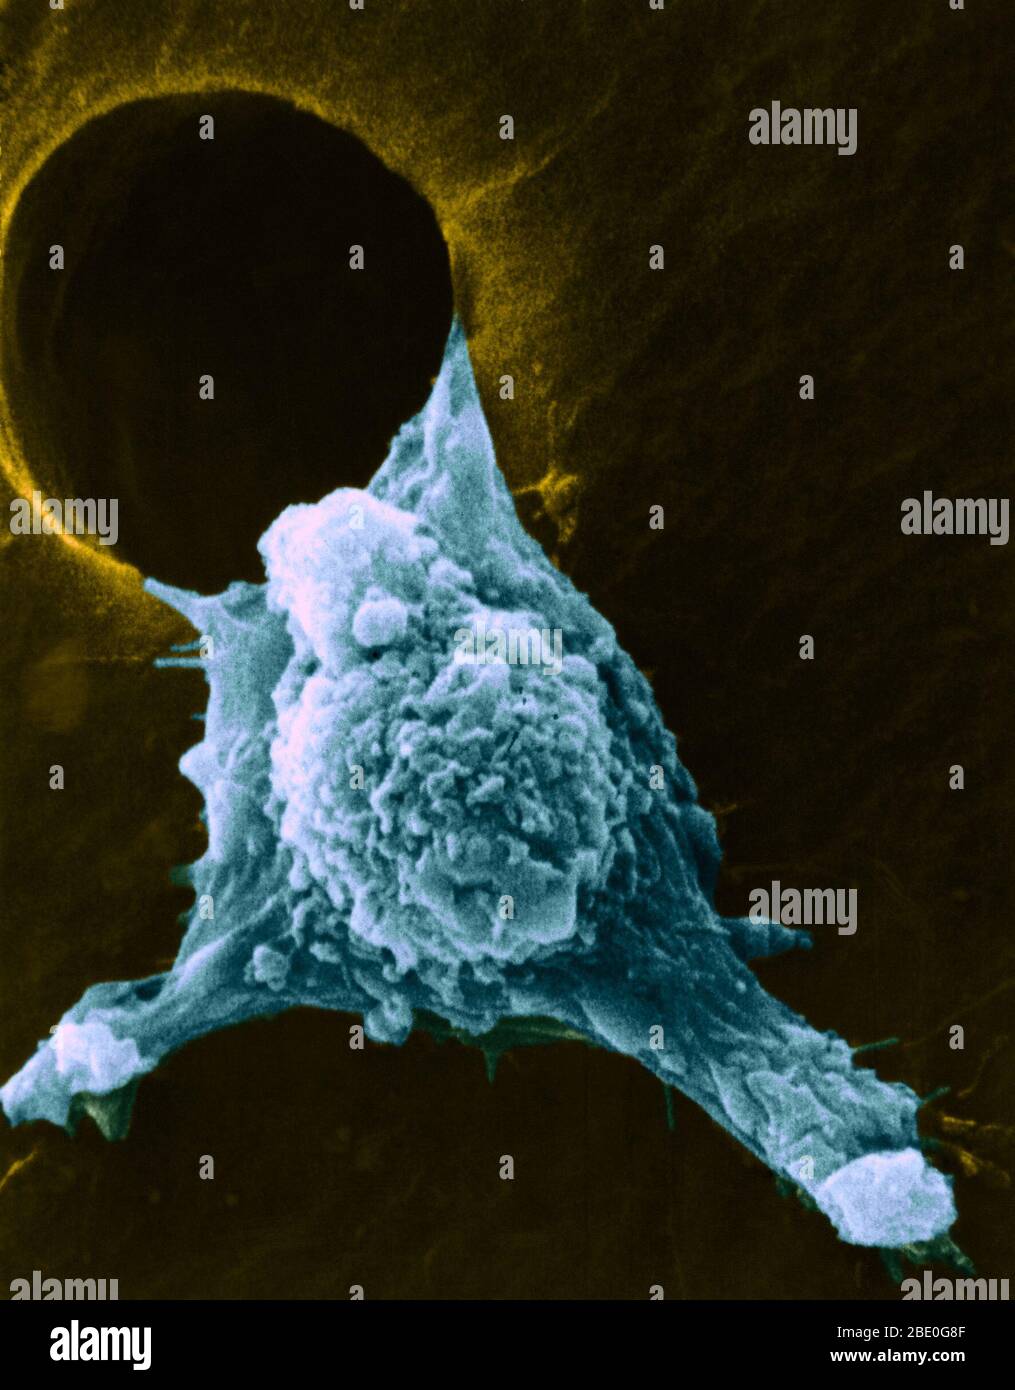 Migrazione delle cellule tumorali. Micrografia elettronica a scansione colorata (SEM) di una cellula tumorale coltivata che si muove (metastatizzando) attraverso un foro in una pellicola di supporto. Si possono vedere numerosi pseudopodi (tipo braccio), fillipodi (tipo filo) e sbiancamenti superficiali (grumi). Queste caratteristiche sono caratteristiche delle cellule altamente mobili, e consentono alle cellule cancerose di diffondersi rapidamente intorno al corpo, e invadere altri organi e tessuti (metastasi). Foto Stock